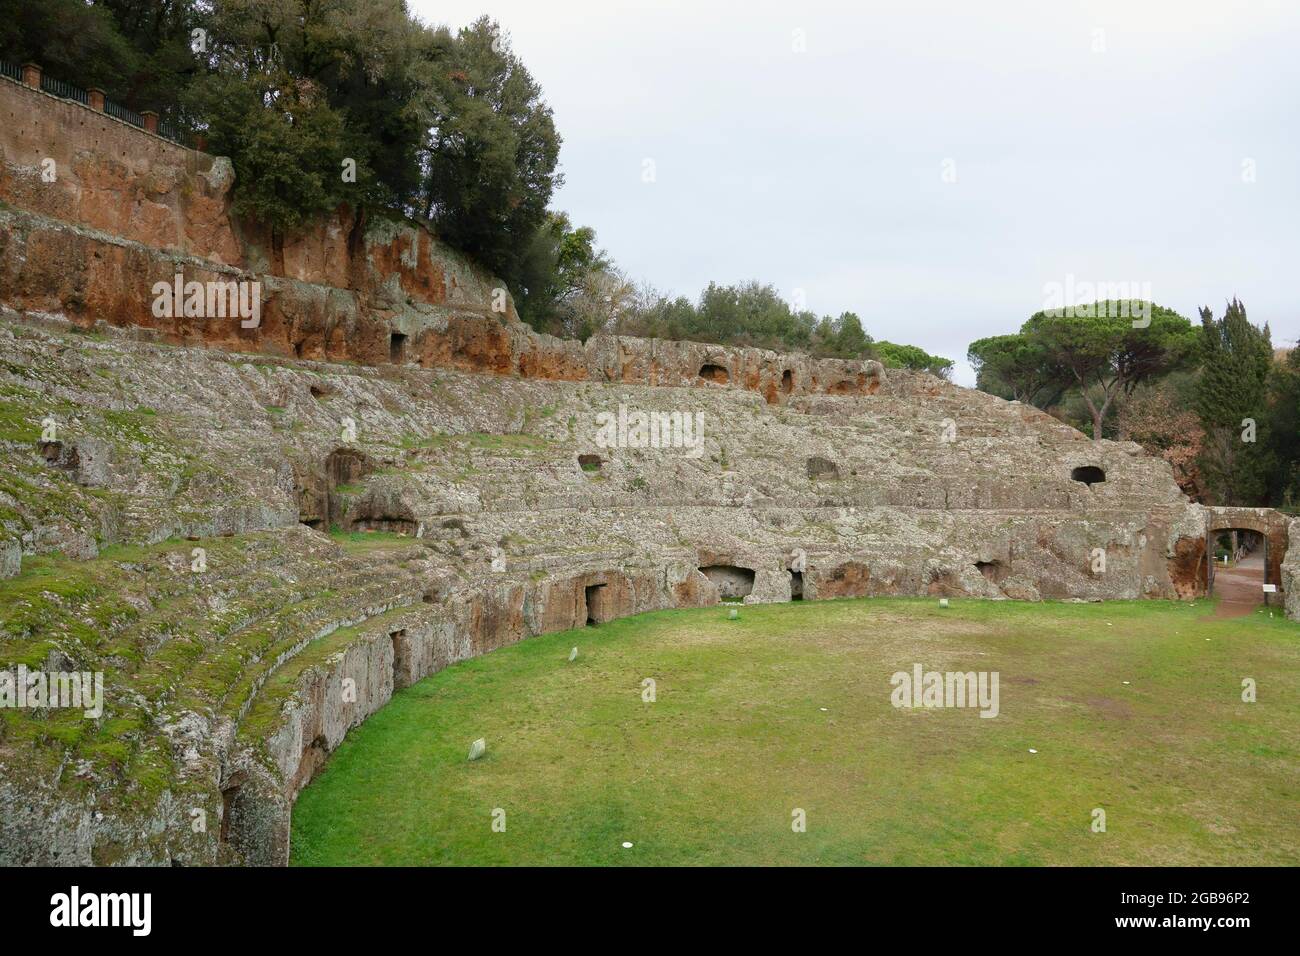 Roman amphitheatre carved out of the tufa, Sutri, Viterbo Province, Lazio Region, Italy Stock Photo